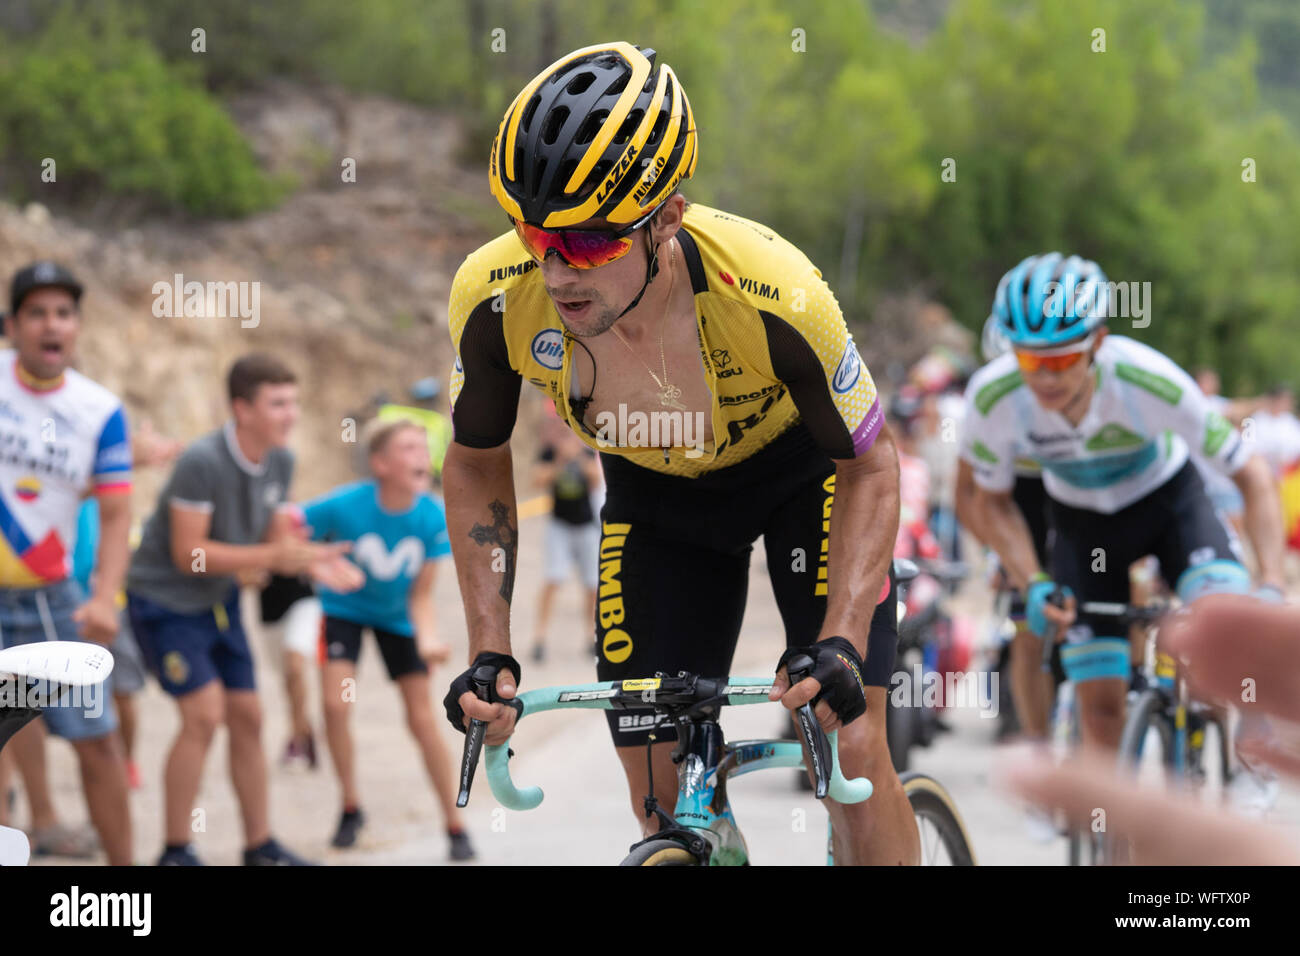 30 augustus 2019 Mas de la Costa, Spain Cycling Vuelta 2019    30-08-2019: Ronde van Spanje: Onda: Mas de la Costa  Jumbo Visma team, Primoz Roglic, stage 7, Vuelta a Espana 2019 Stock Photo